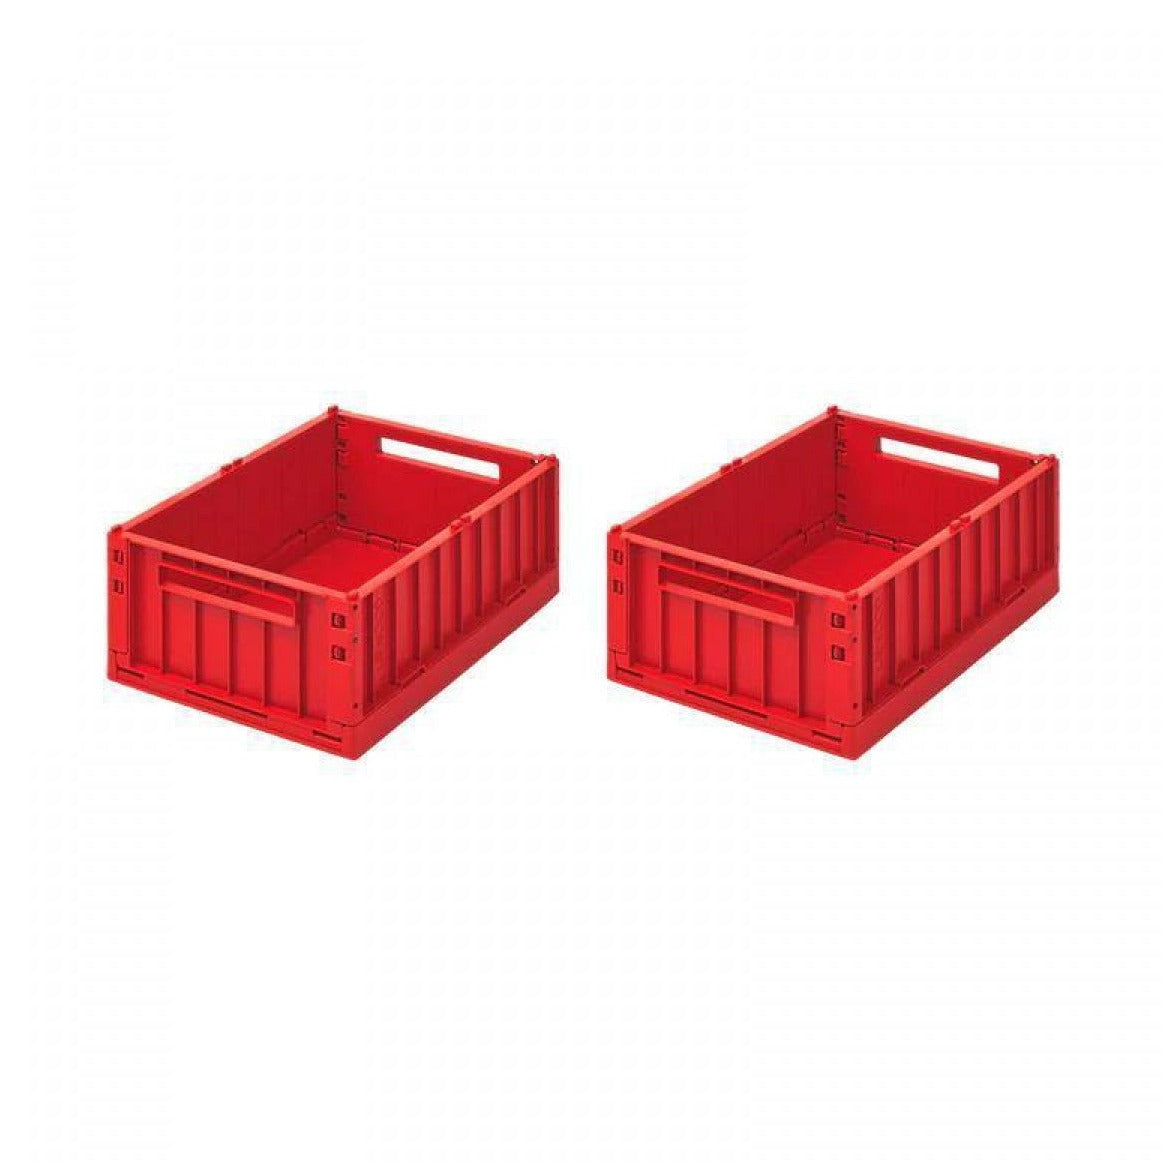 LIEWOOD WESTON 2 PACK STORAGE BOX: MED / APPLE RED